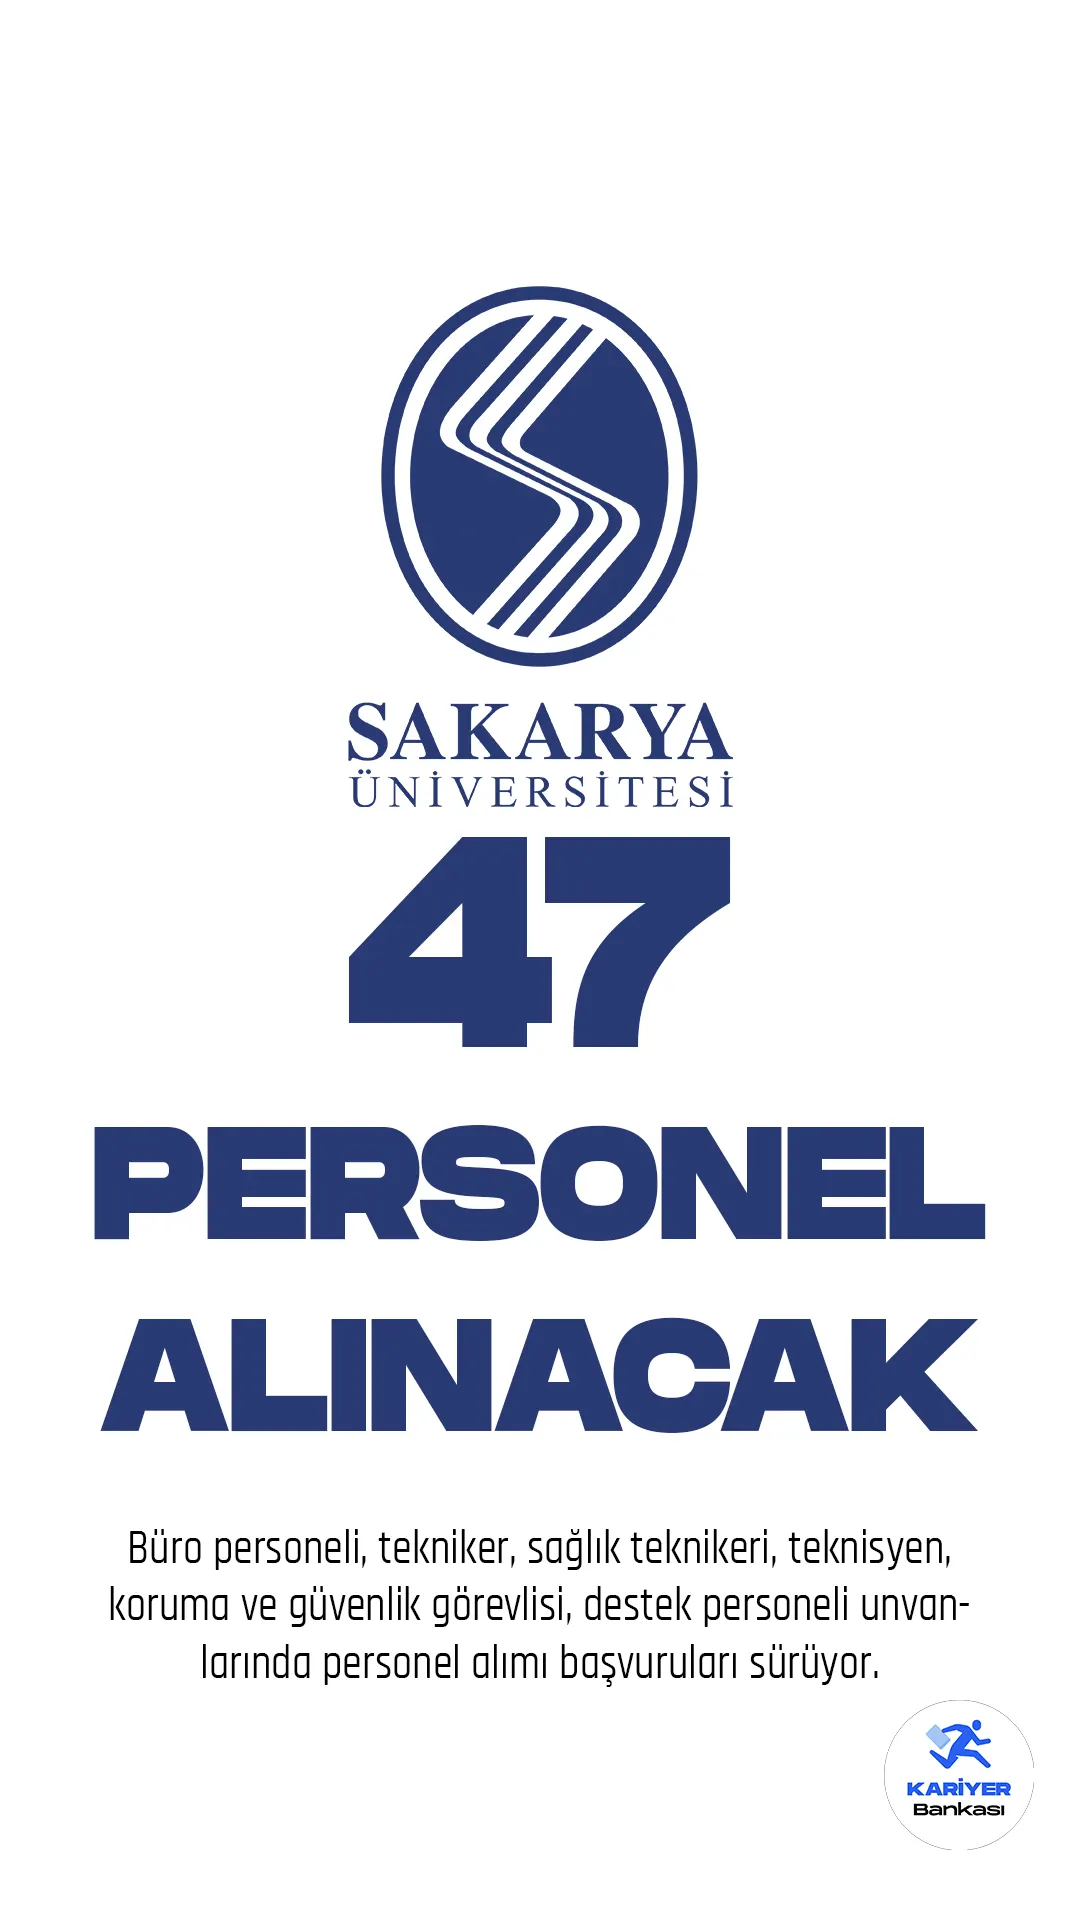 Sakarya Üniversitesi personel alımı başvuruları devam ediyor. Cumhurbaşkanlığı SBB Kamu ilan sitesi üzerinden yayımlanan duyuruda, Üniversiteye 47 sözleşmeli personel alımı yapılacağına yer verildi.